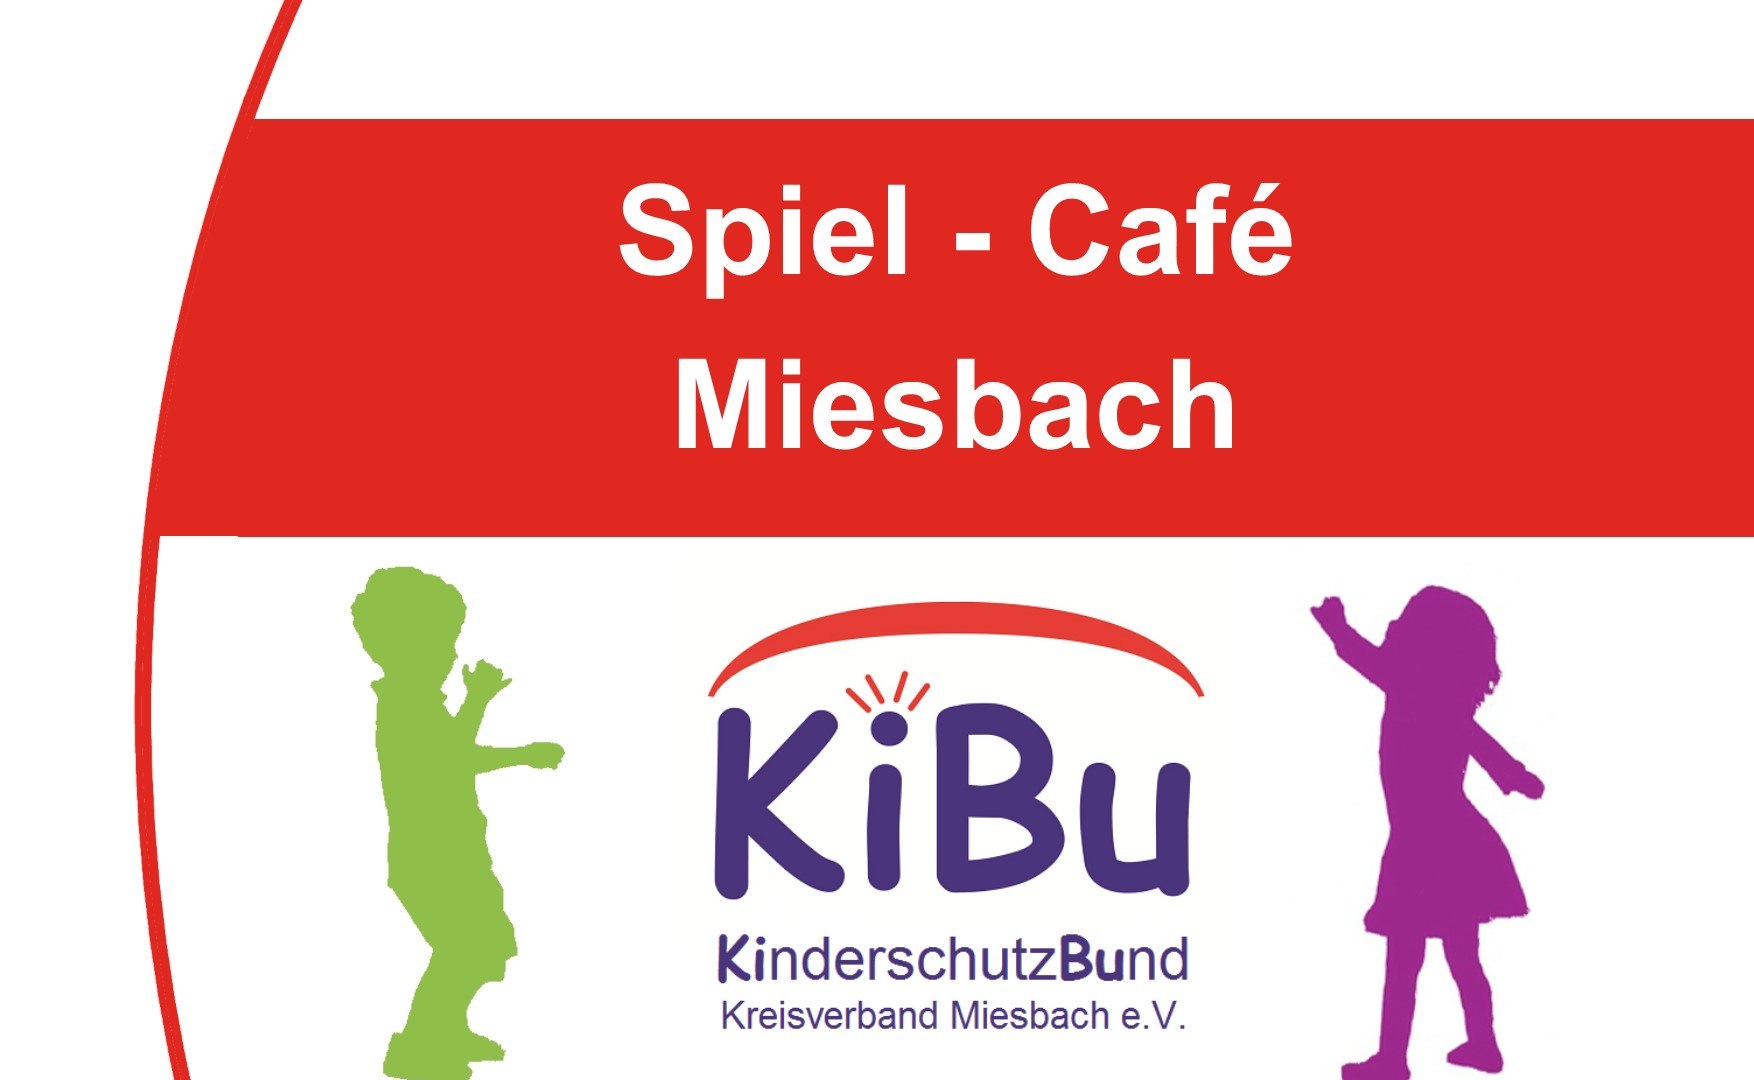 plakat_sc_miesbach_quer_3, © Kinderschutzbund Miesbach